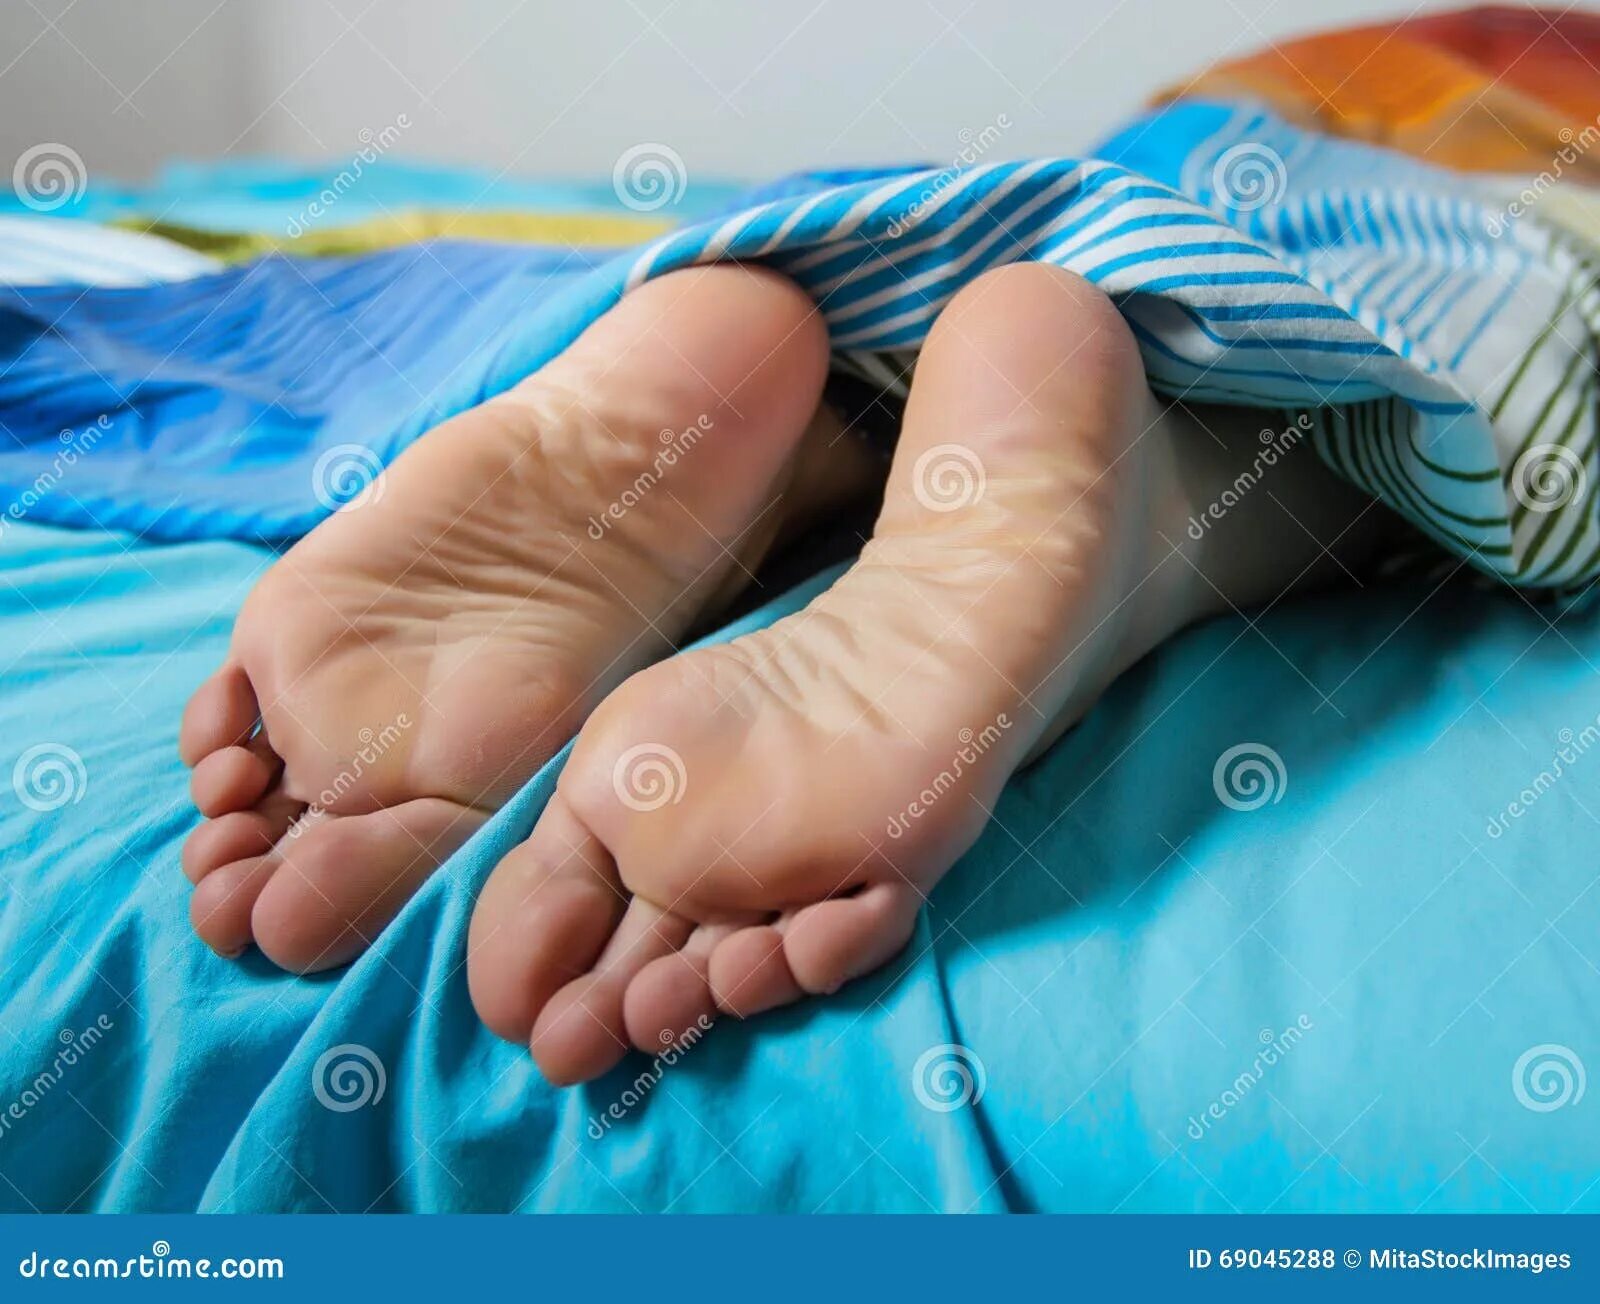 Спящие ноги жены. Пятки спящей. Ступни спящих. Ступни спящих женщин. Женские ступни ног спящих.